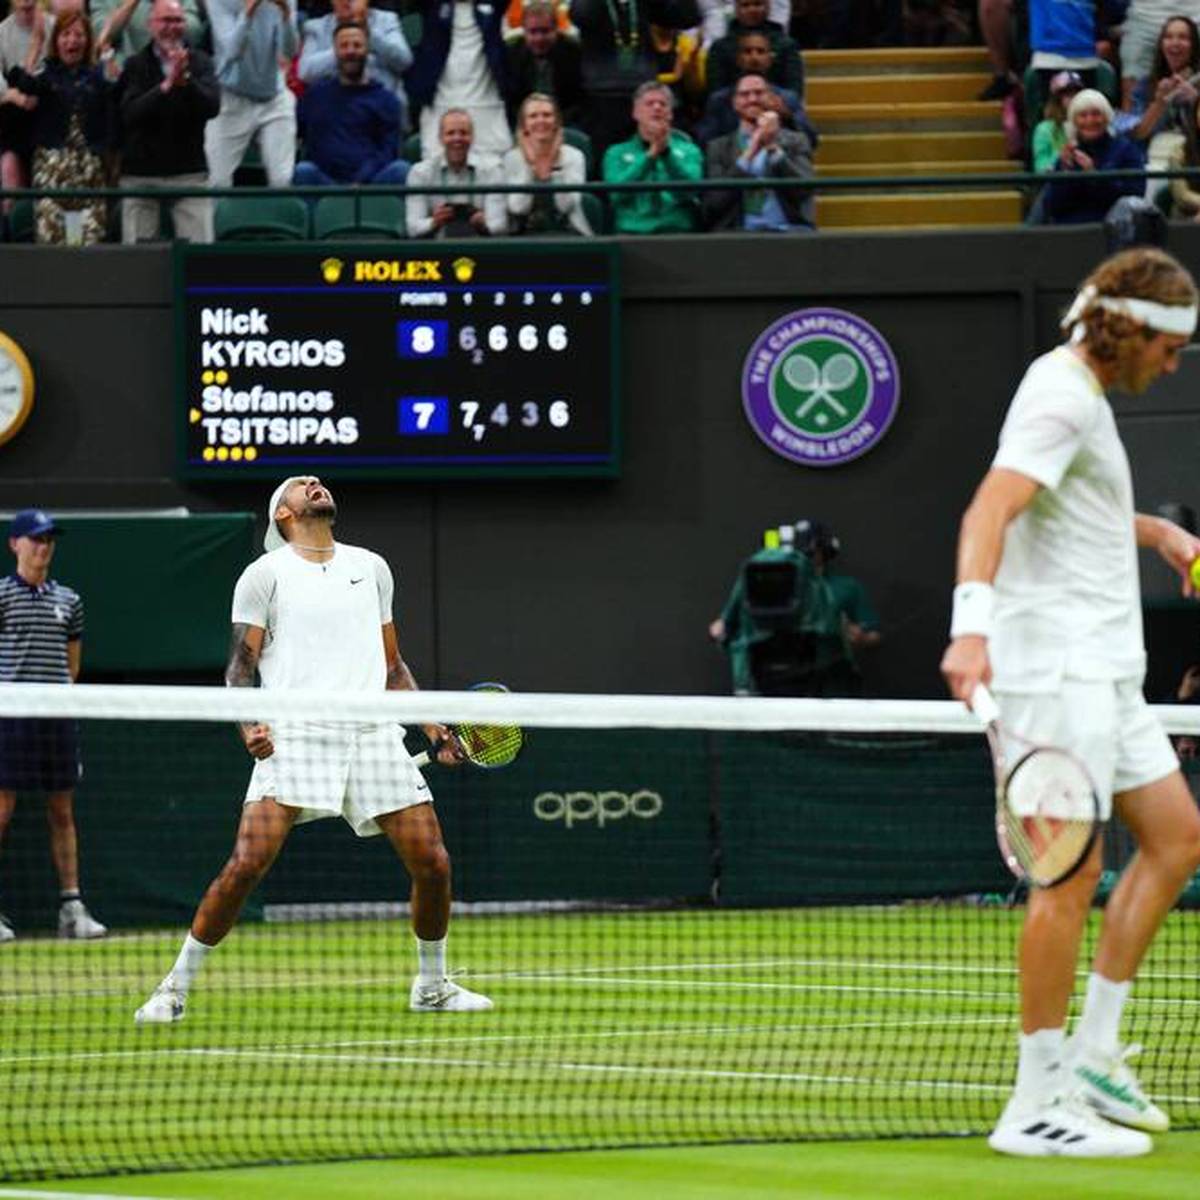 Stefanos Tsitsipas und Nick Kyrgios wurden nach ihrem hitzigen Drittrundenduell in Wimbledon zu Geldstrafen verurteilt.